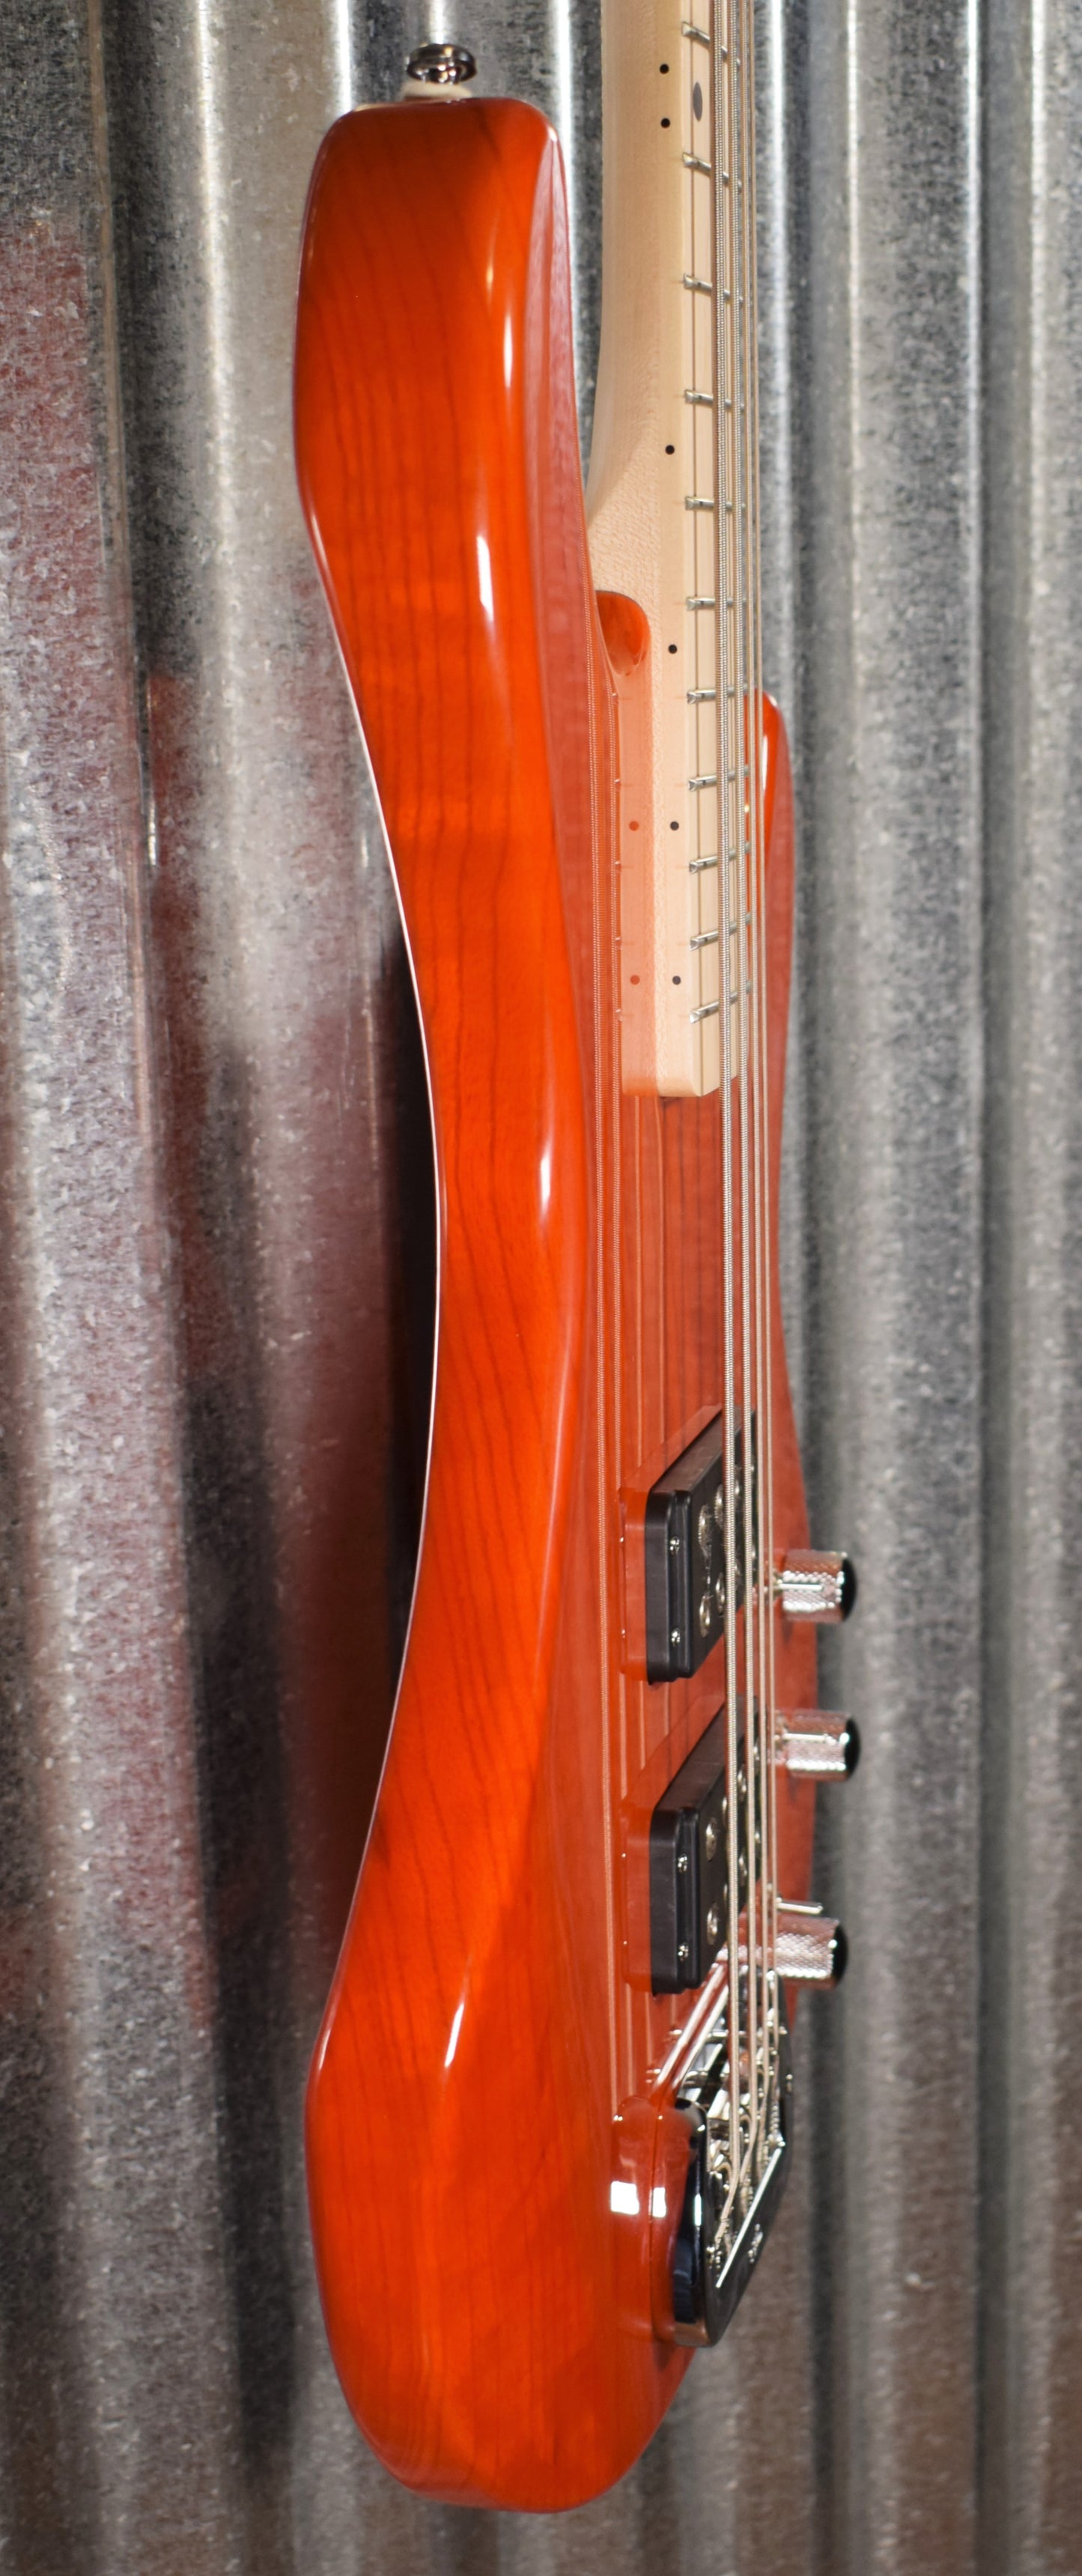 G&L Tribute L-2000 Clear Orange 4 String Bass L2000 & Case #2966 Demo